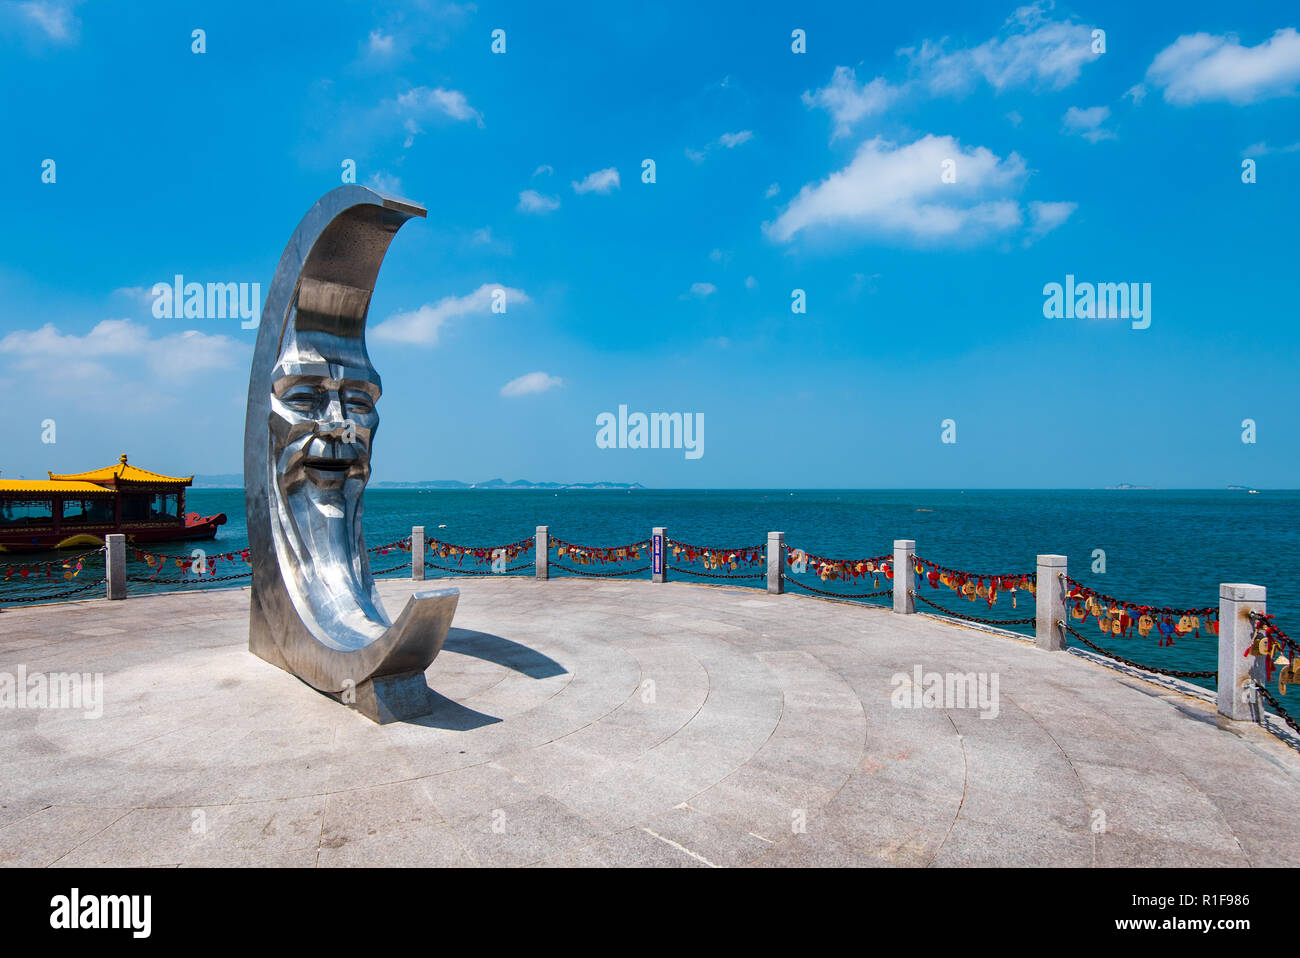 YANTAI, SHANDONG, CHINA - 16JUL2018: Moon sculpture at Moon Bay Stock Photo